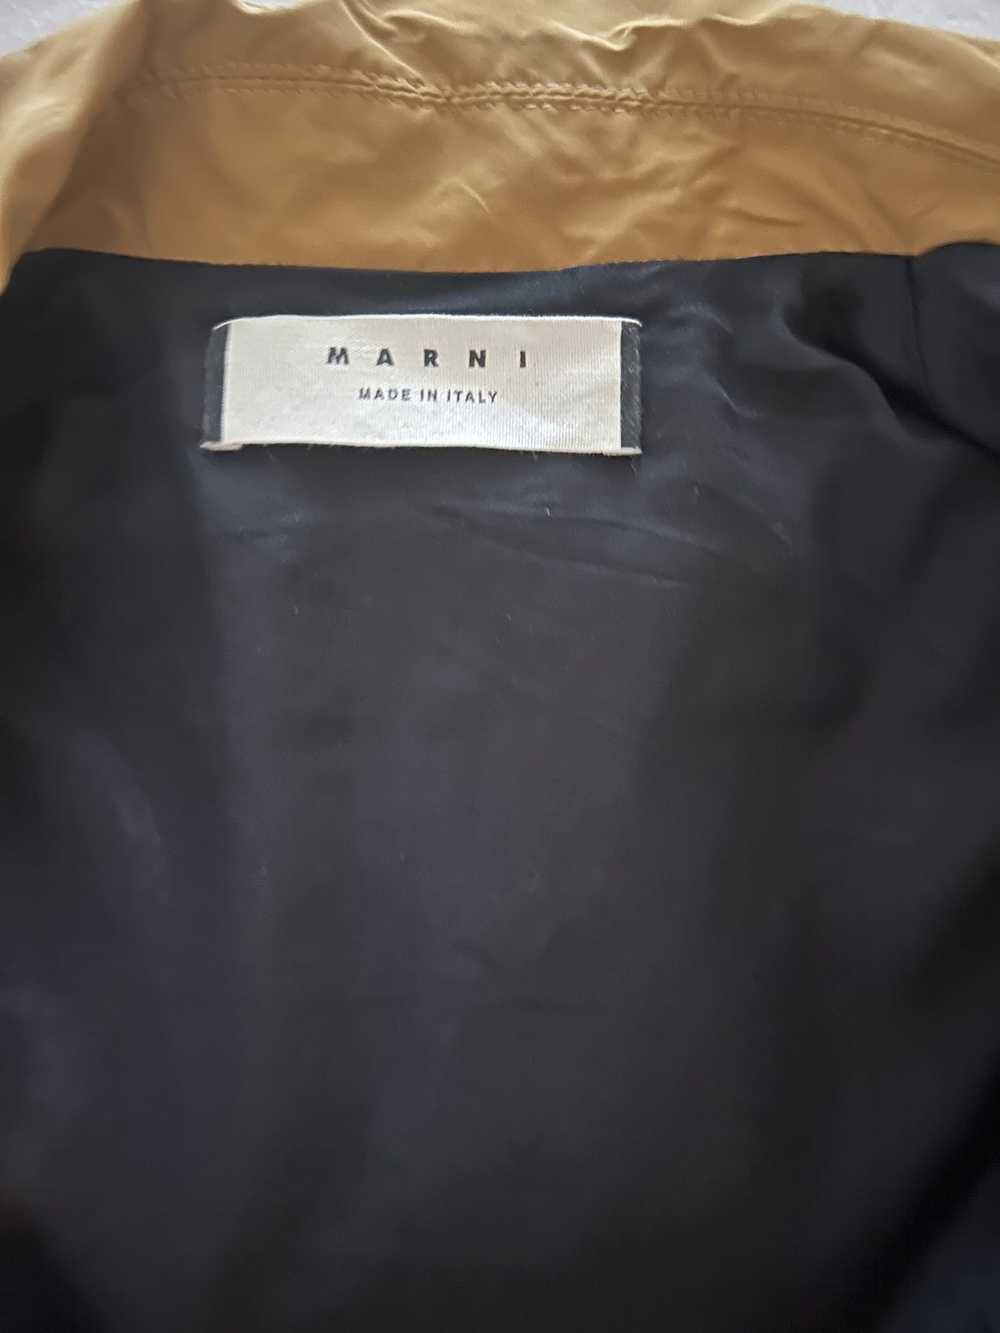 Marni Marni Overcoat - image 5